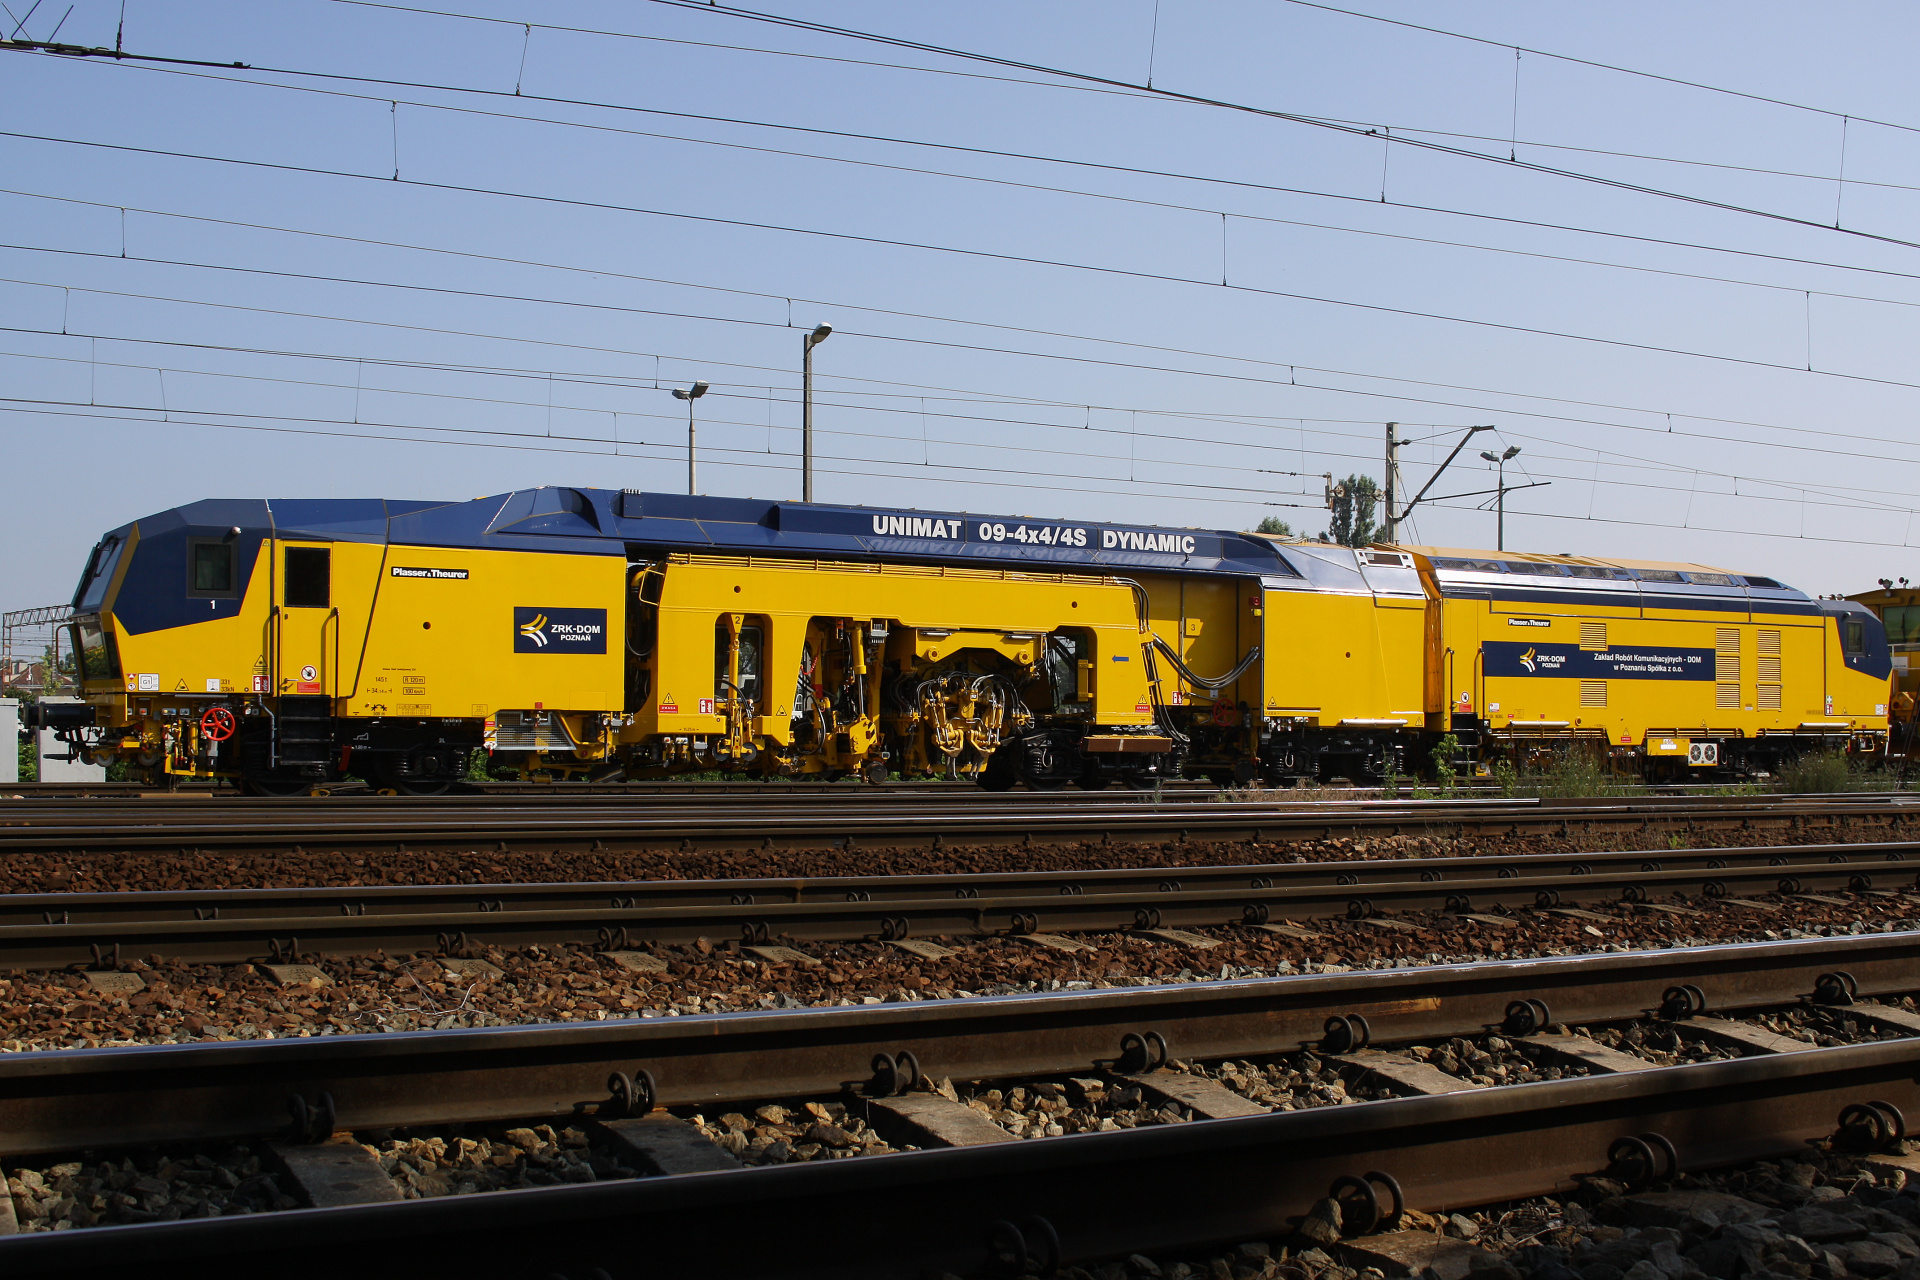 Plasser & Theurer Unimat 09-4x4/4S Dynamic E<sup>3</sup> (Vehicles » Trains and Locomotives » Maintenance)